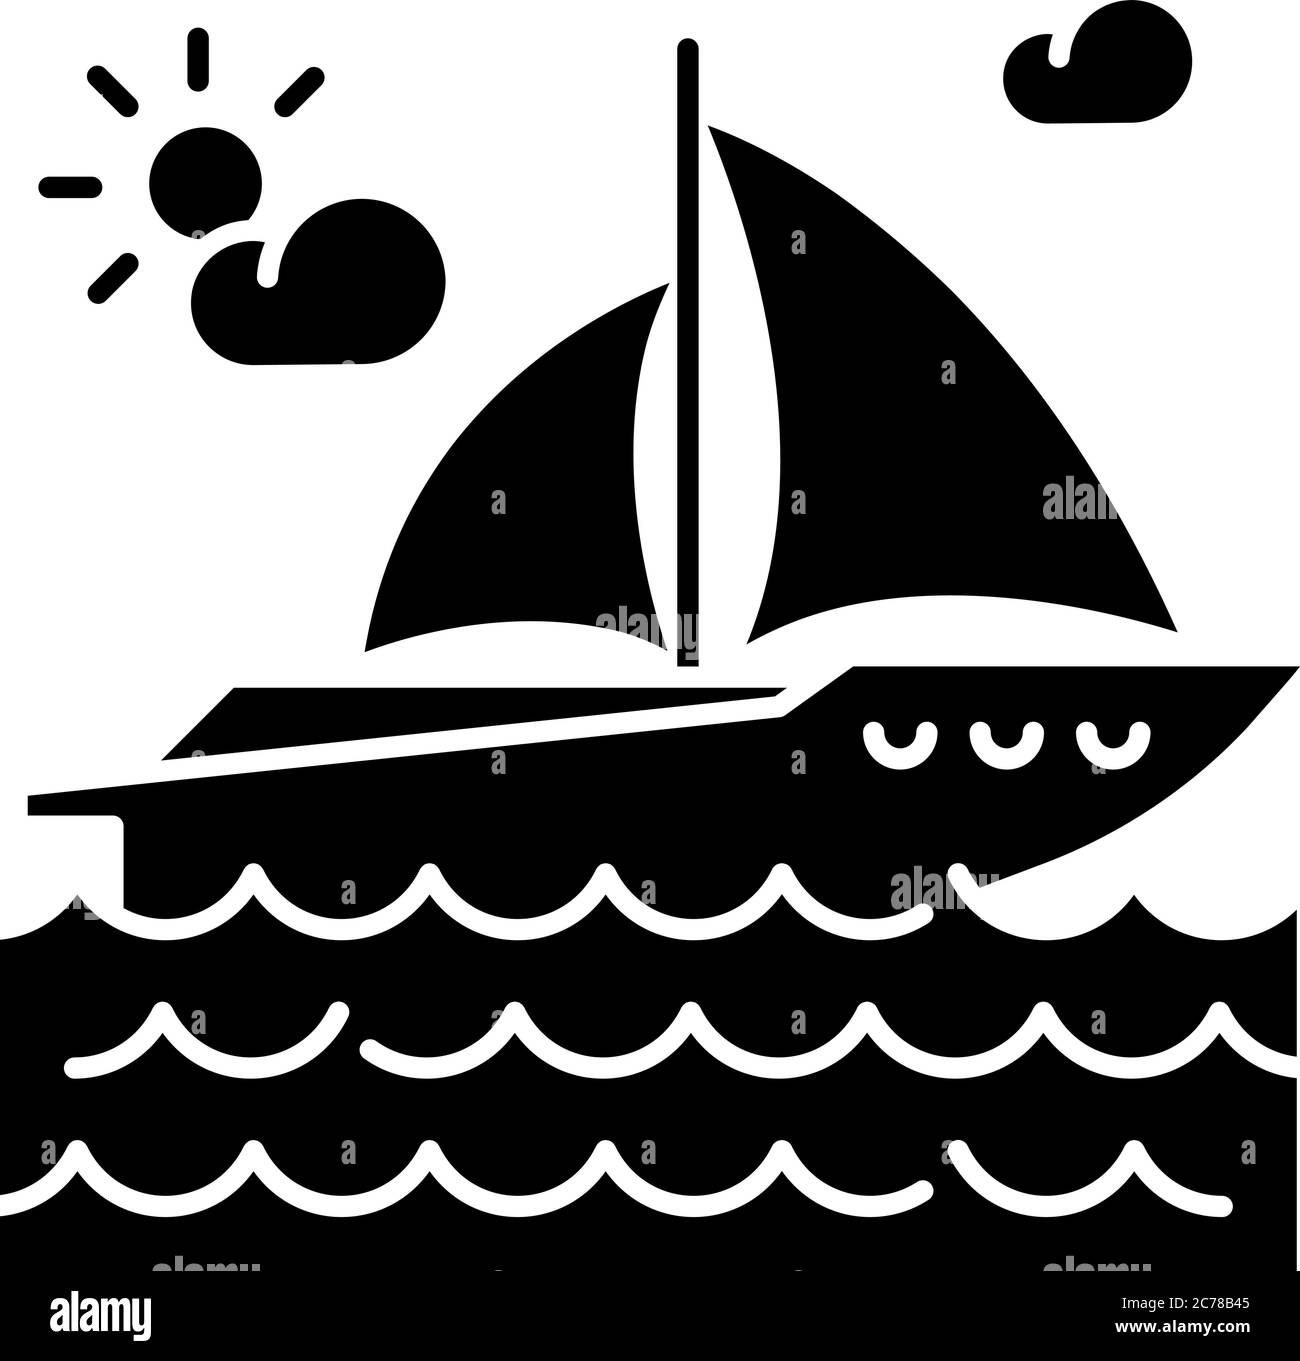 Yachting schwarze Glyphe Symbol. Luxuriöse Erholung, nautischen Tourismus, Segelsport Silhouette Symbol auf weißem Raum. Seereise, romantischer Ausflug auf Pleas Stock Vektor